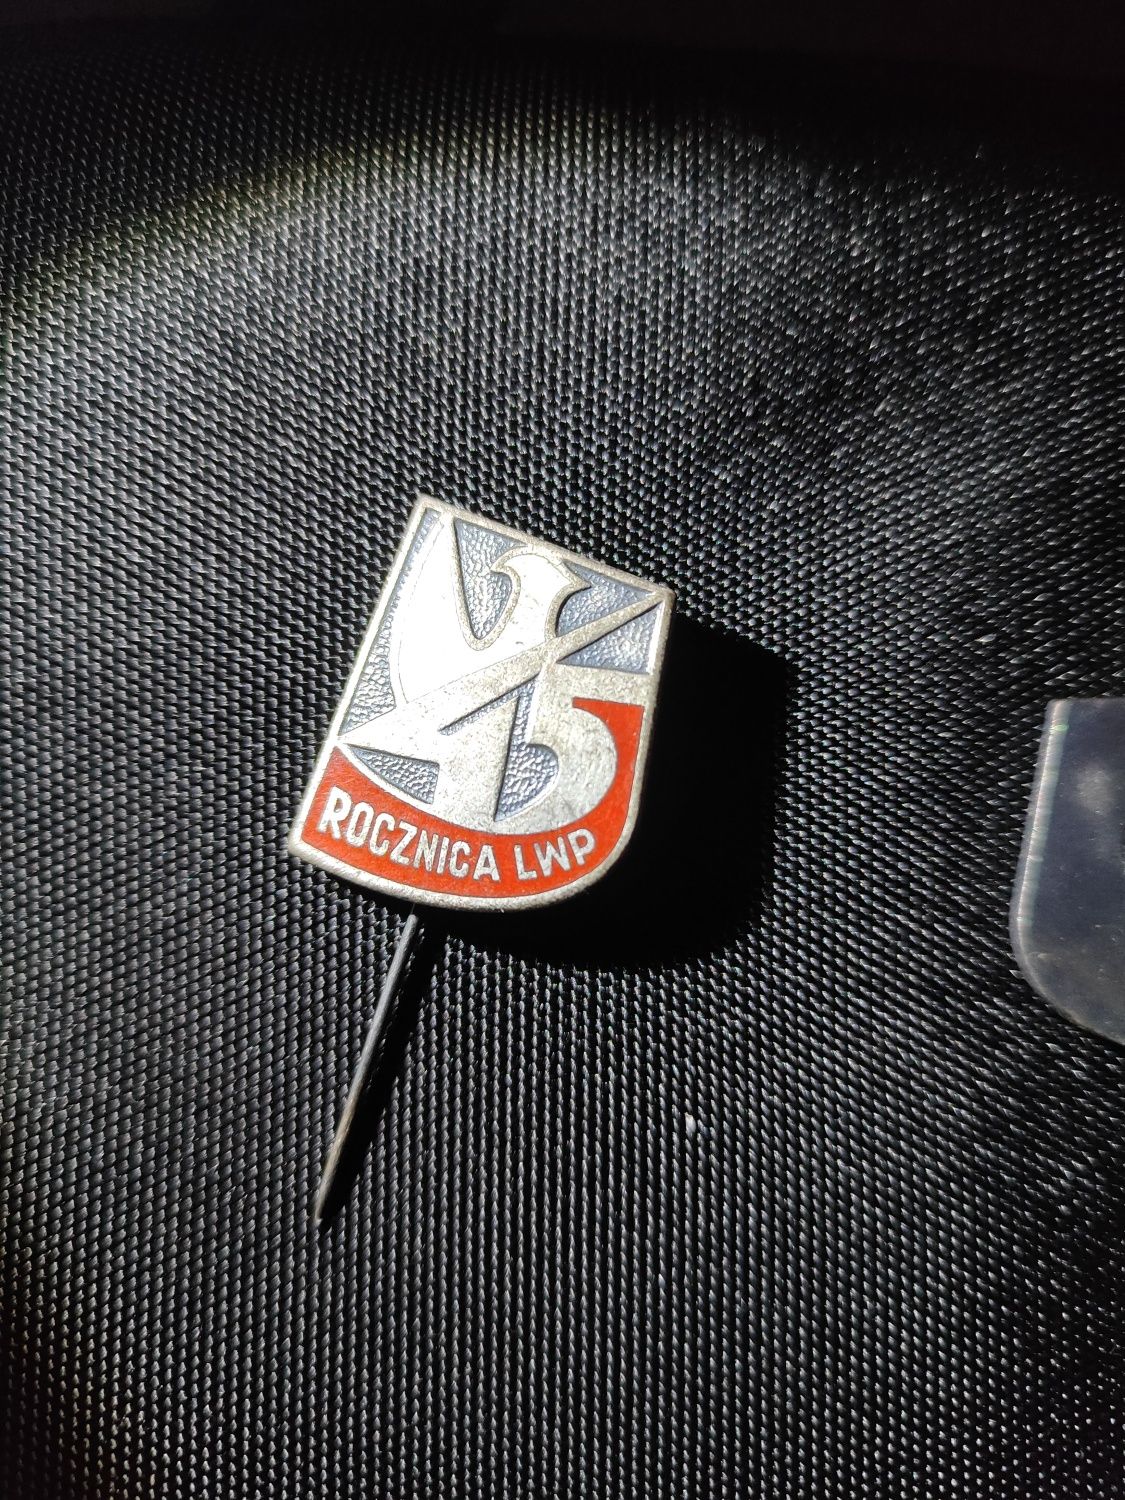 Odznaka wpinka PRL 45 rocznica lwp ludowego wojska polskiego